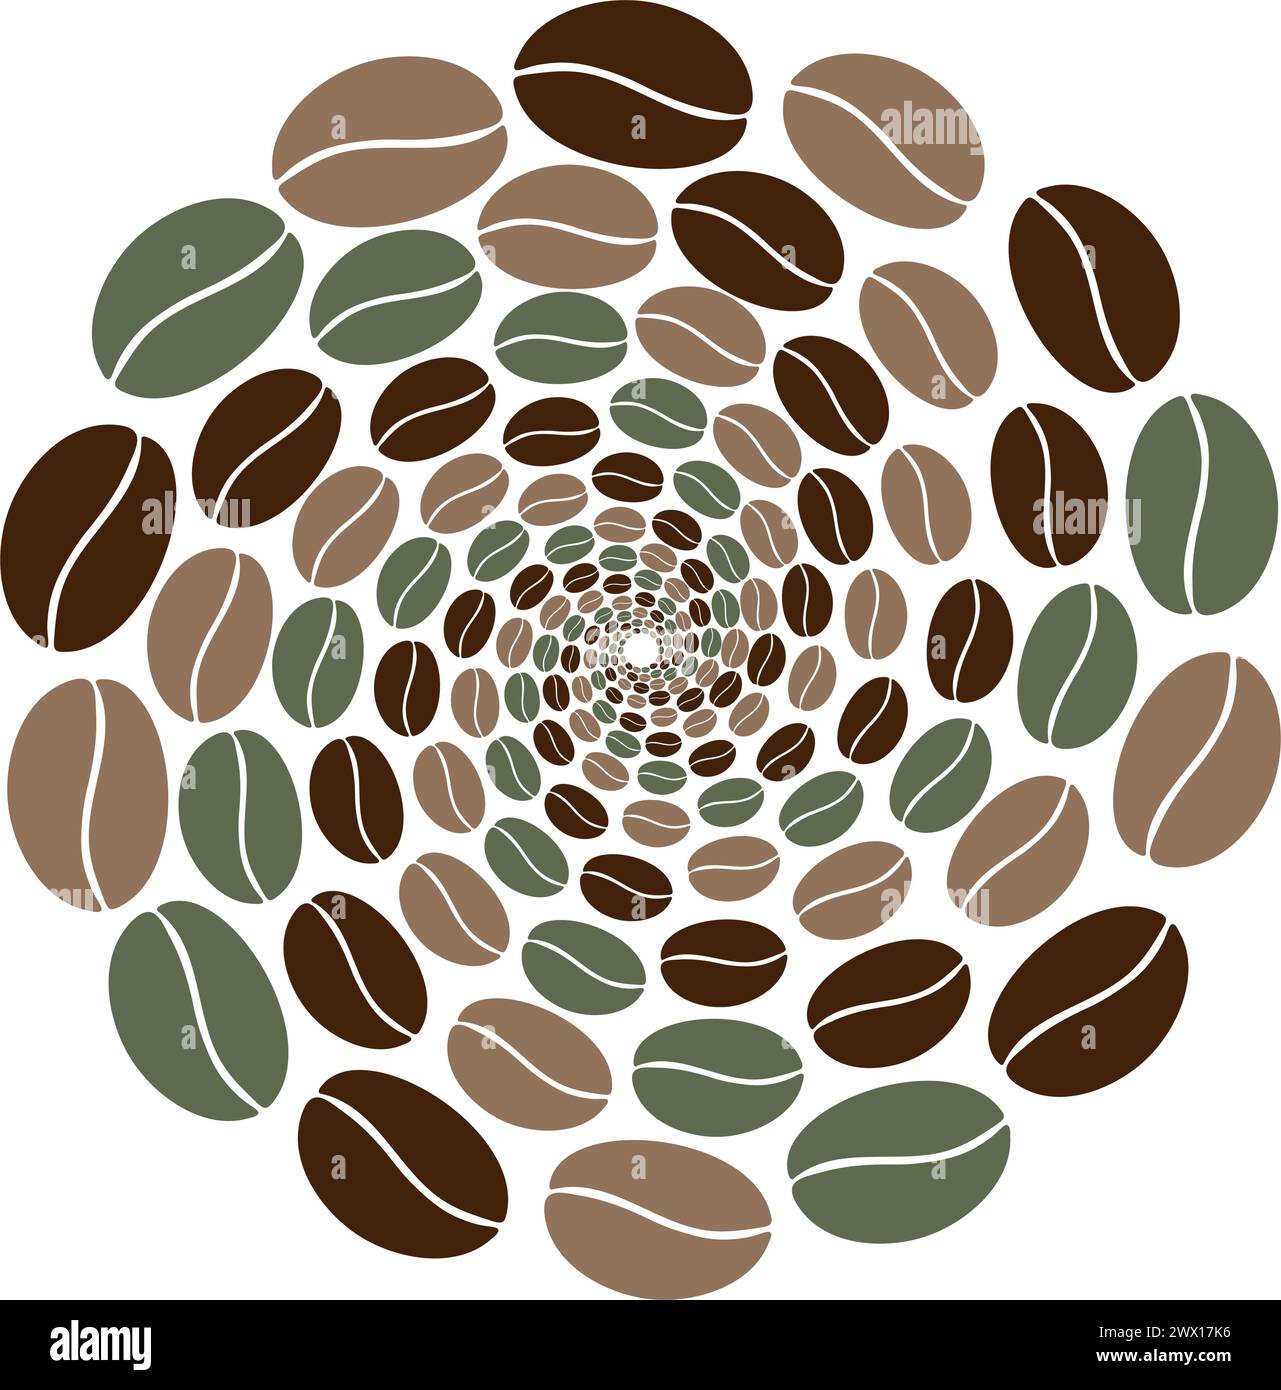 Forme de cercle abstrait de grains de café multicolores se déplaçant en spirale en marron et vert tendance. Salutations ou concept de conception de toile de fond. Isoler. EPS. Vecteur pour cartes, affiche, bannière, panneaux d'affichage ou web Illustration de Vecteur